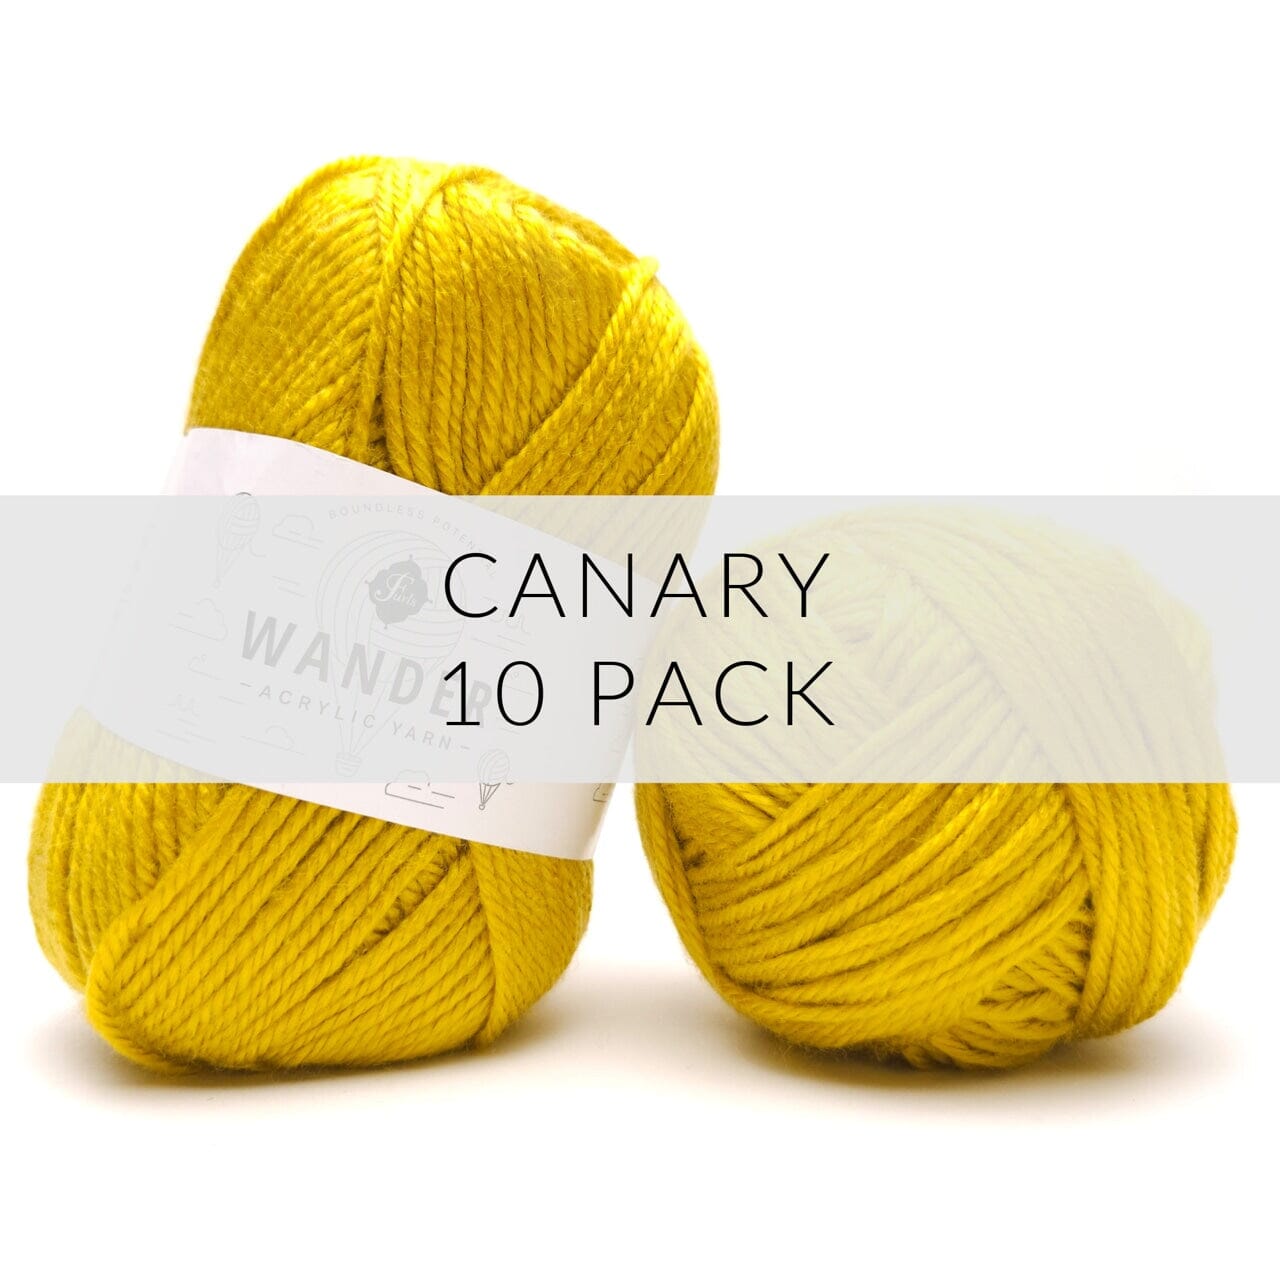 10 Pack Wander Acrylic Yarn Yarn FurlsCrochet Canary 